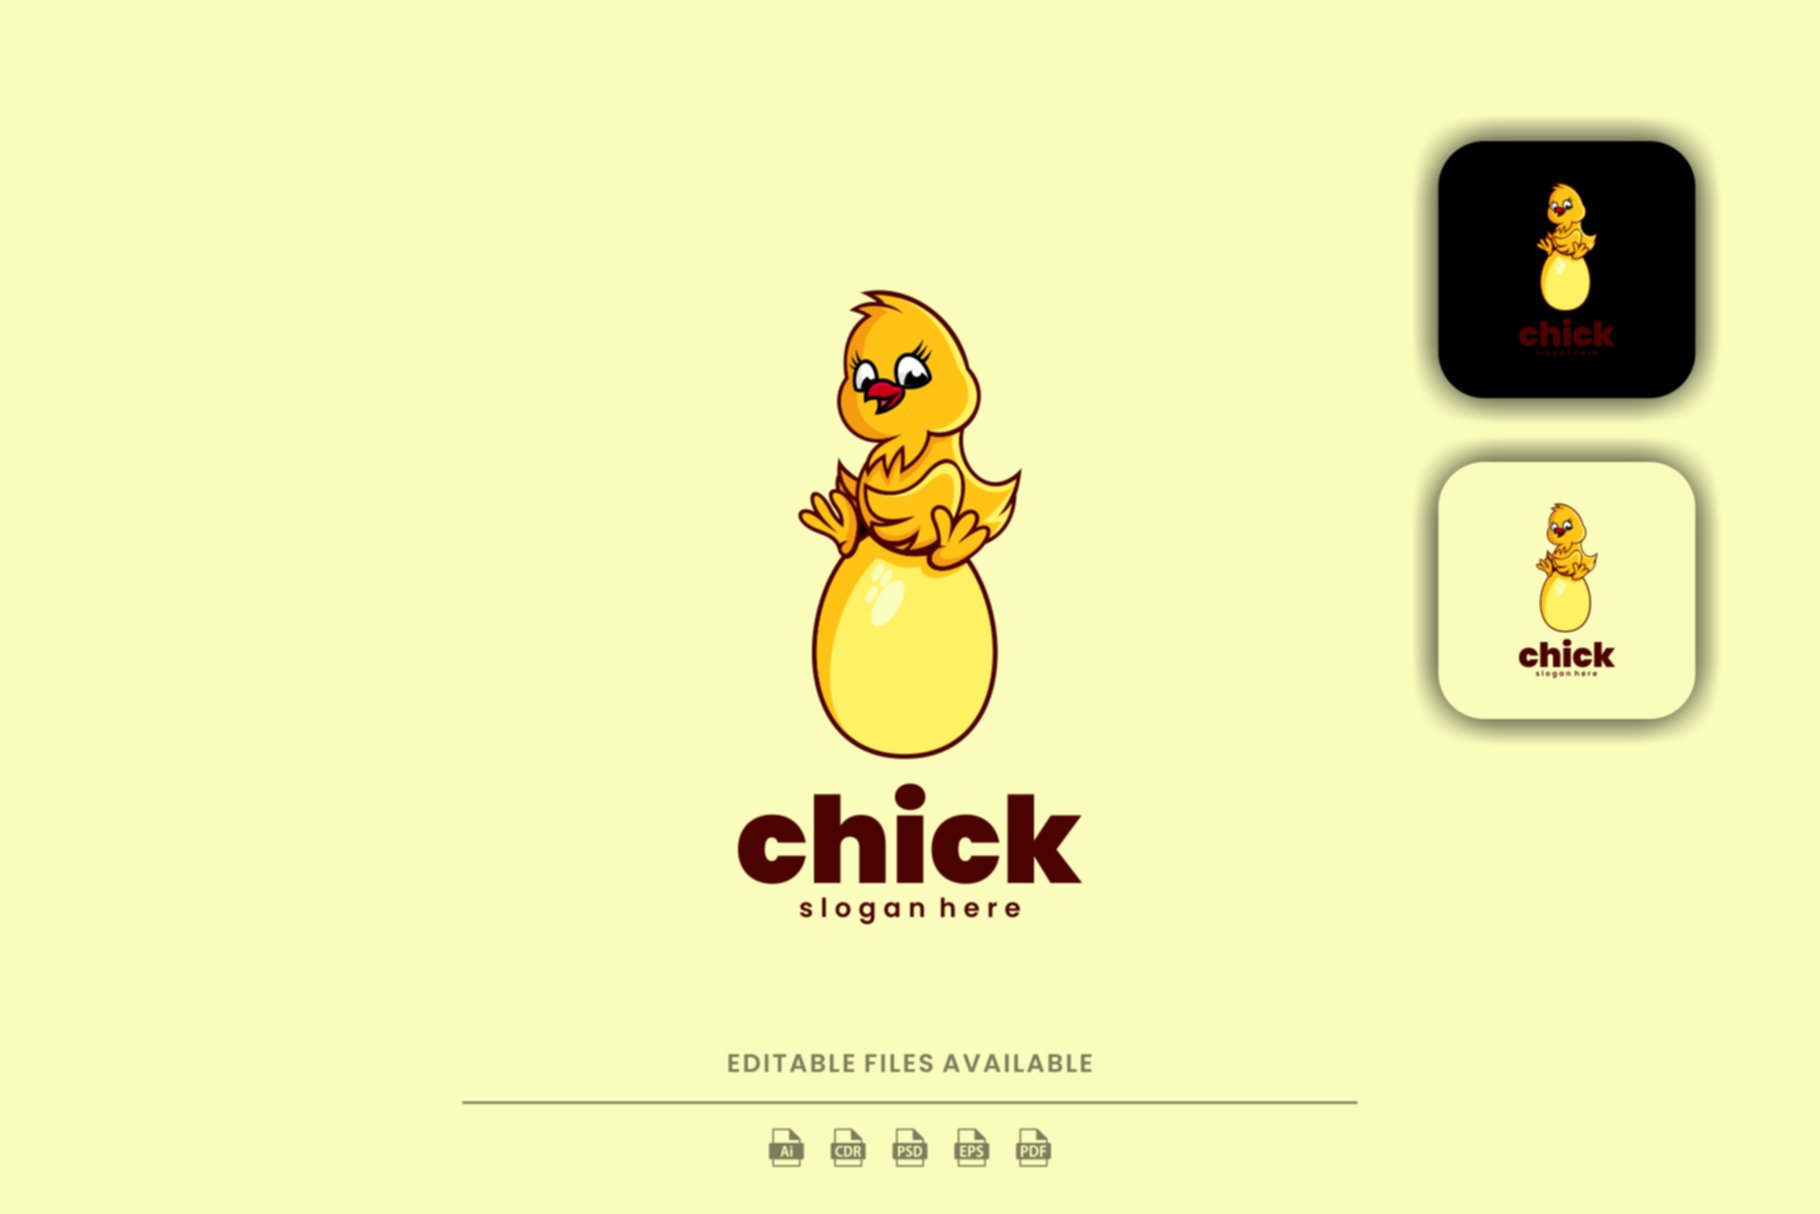 Chick Cartoon Logo cover image.